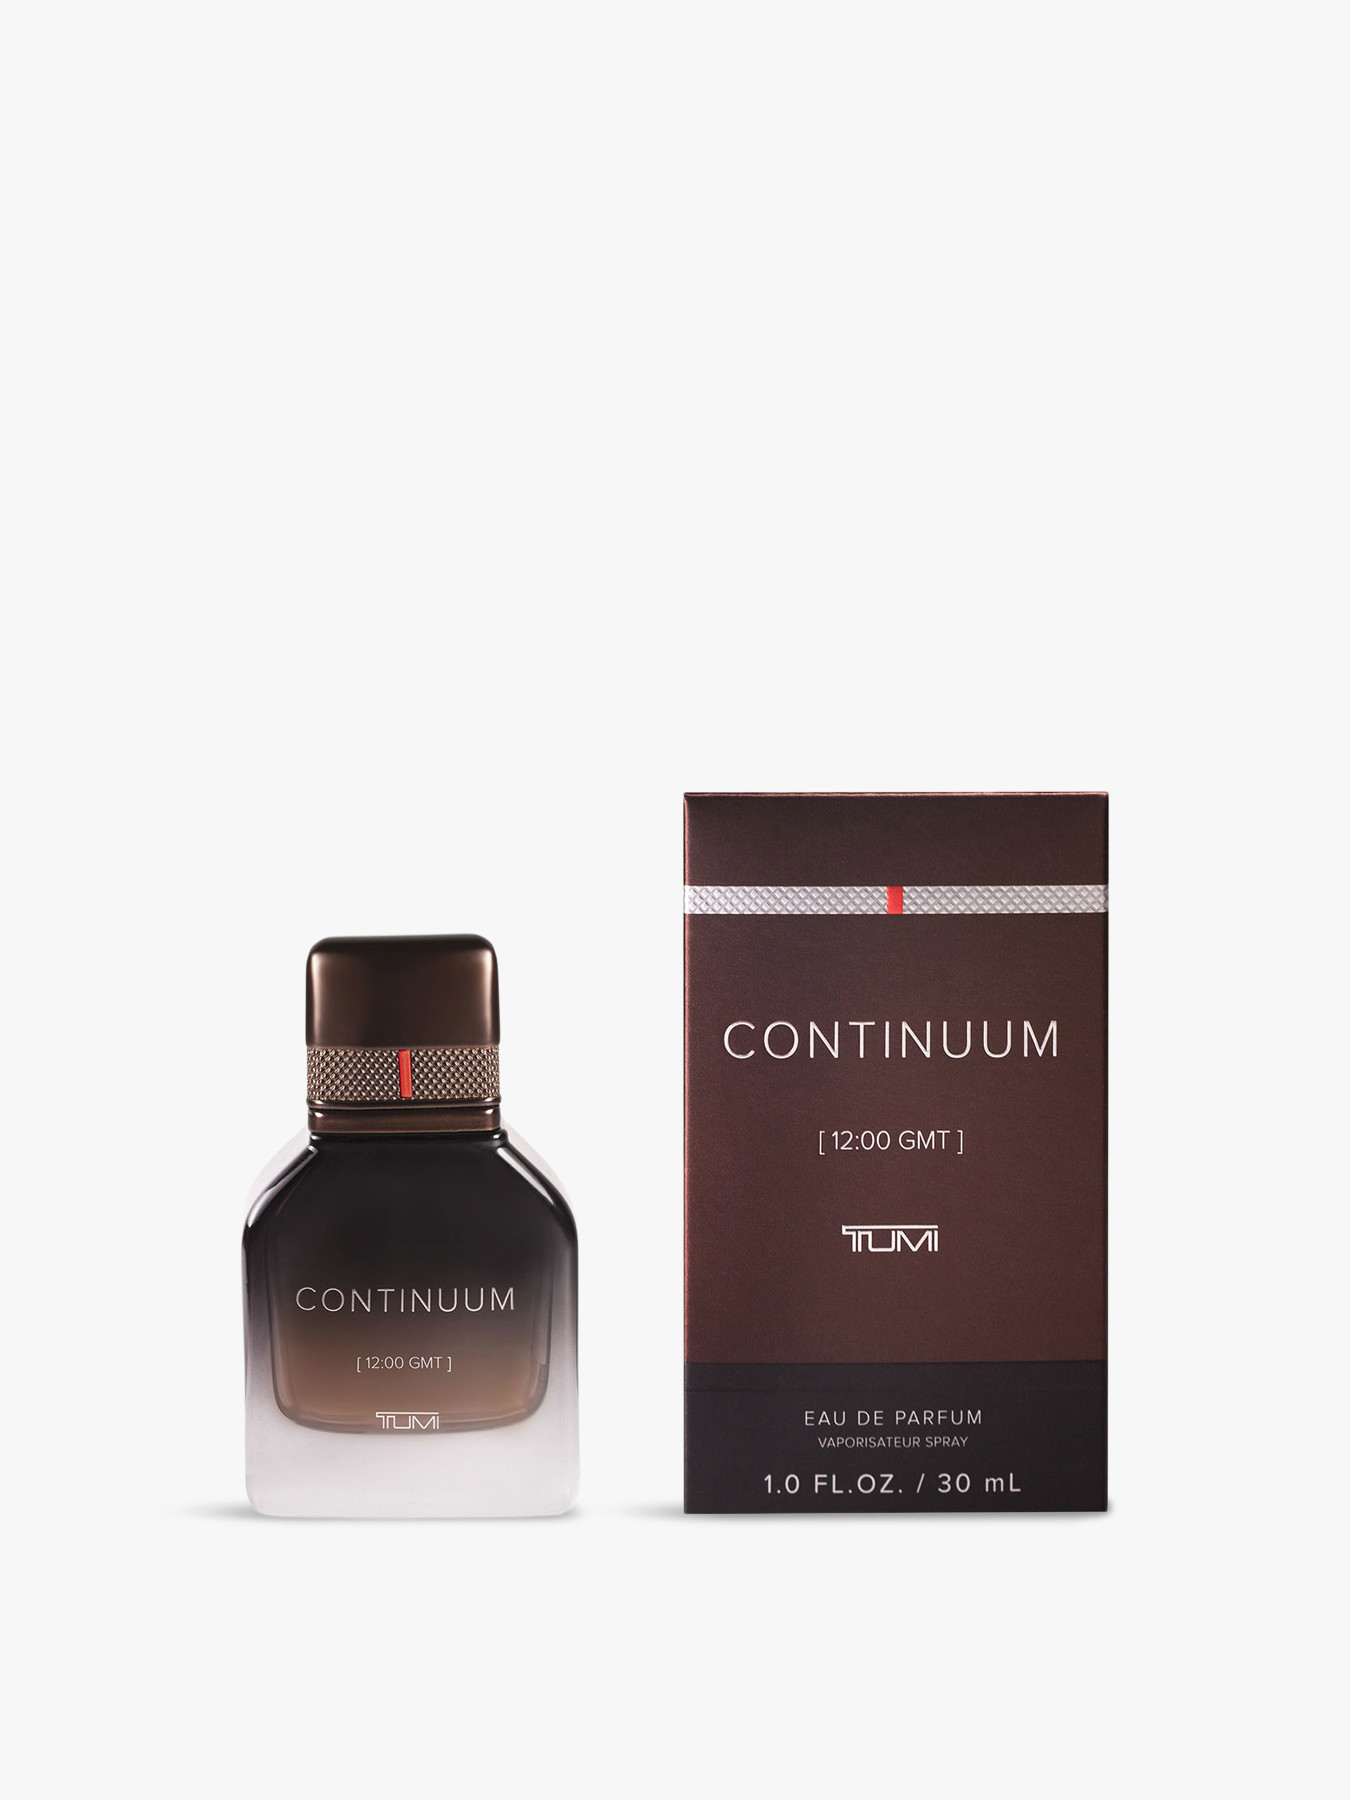 Tumi Continuum 12:00gmt Eau De Parfum 30ml